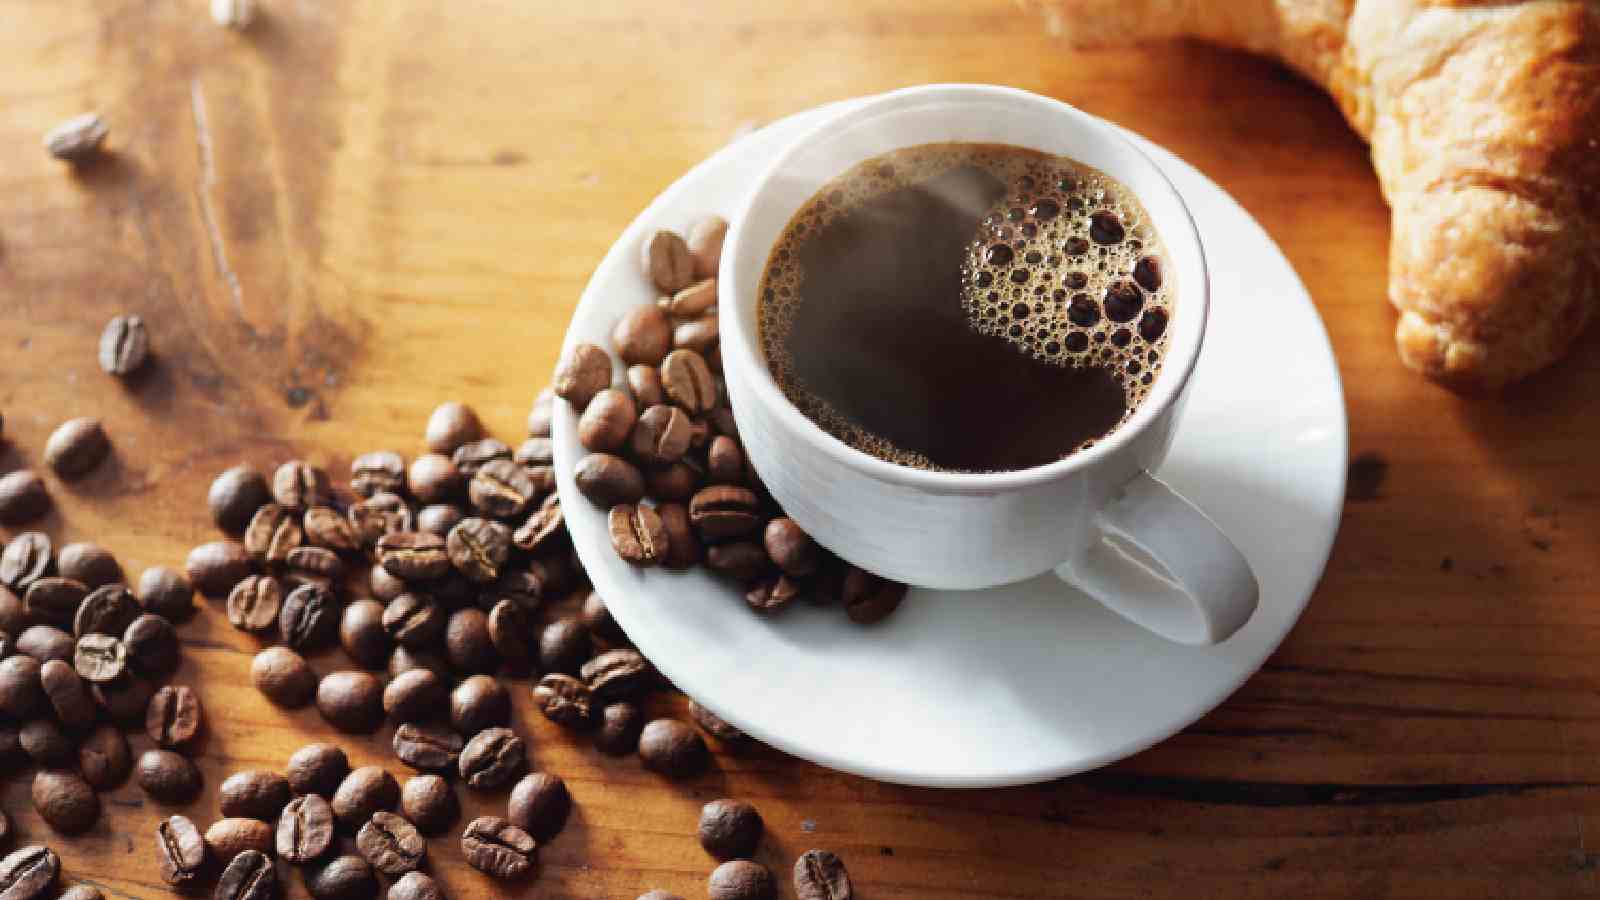 फैटी लीवर रोग के मरीजों को कॉफी पीने से बचना चाहिए